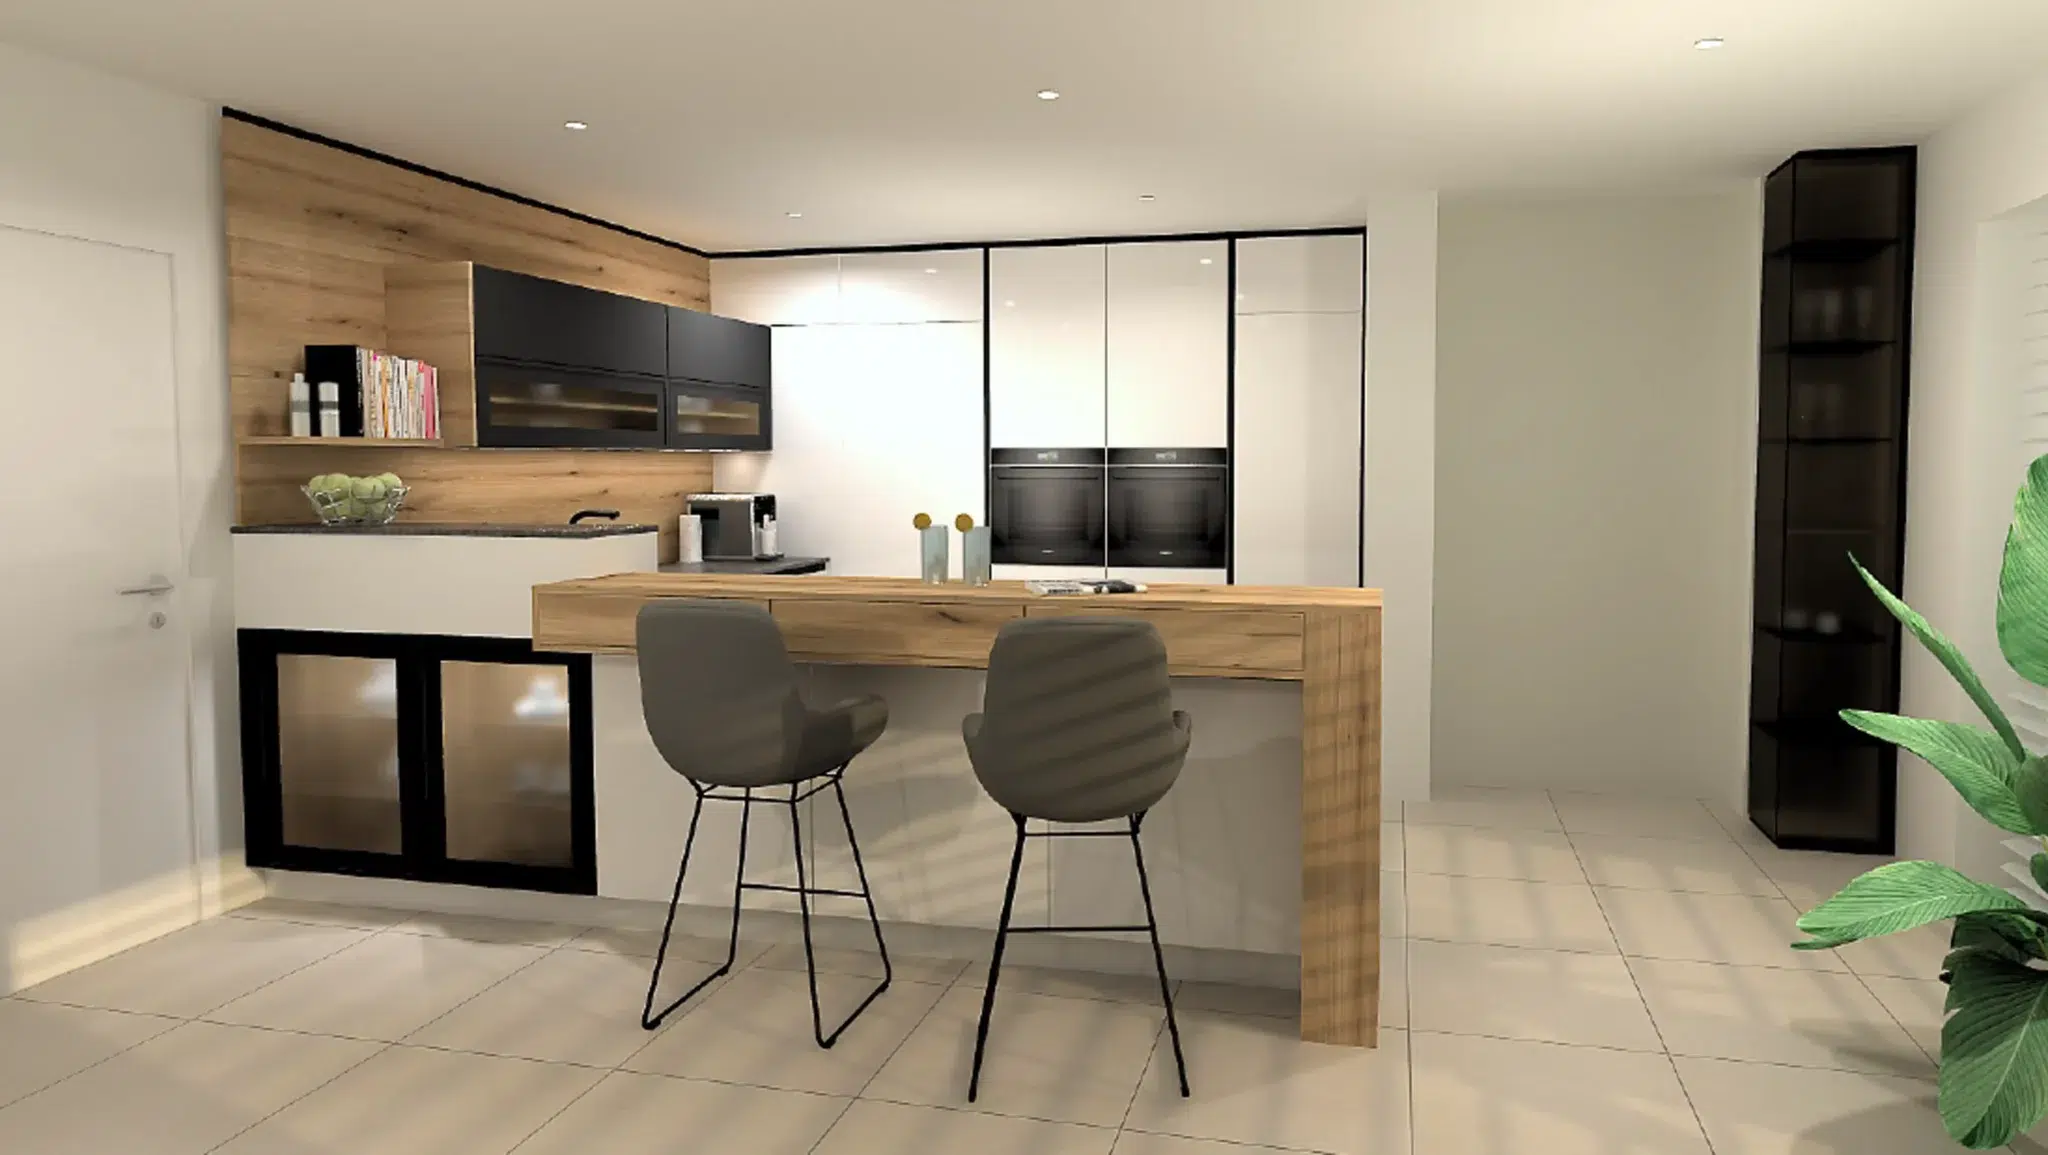 3D Plan von Breitschopf Küchen mit einer hellen Küche in hellgrau und Eiche